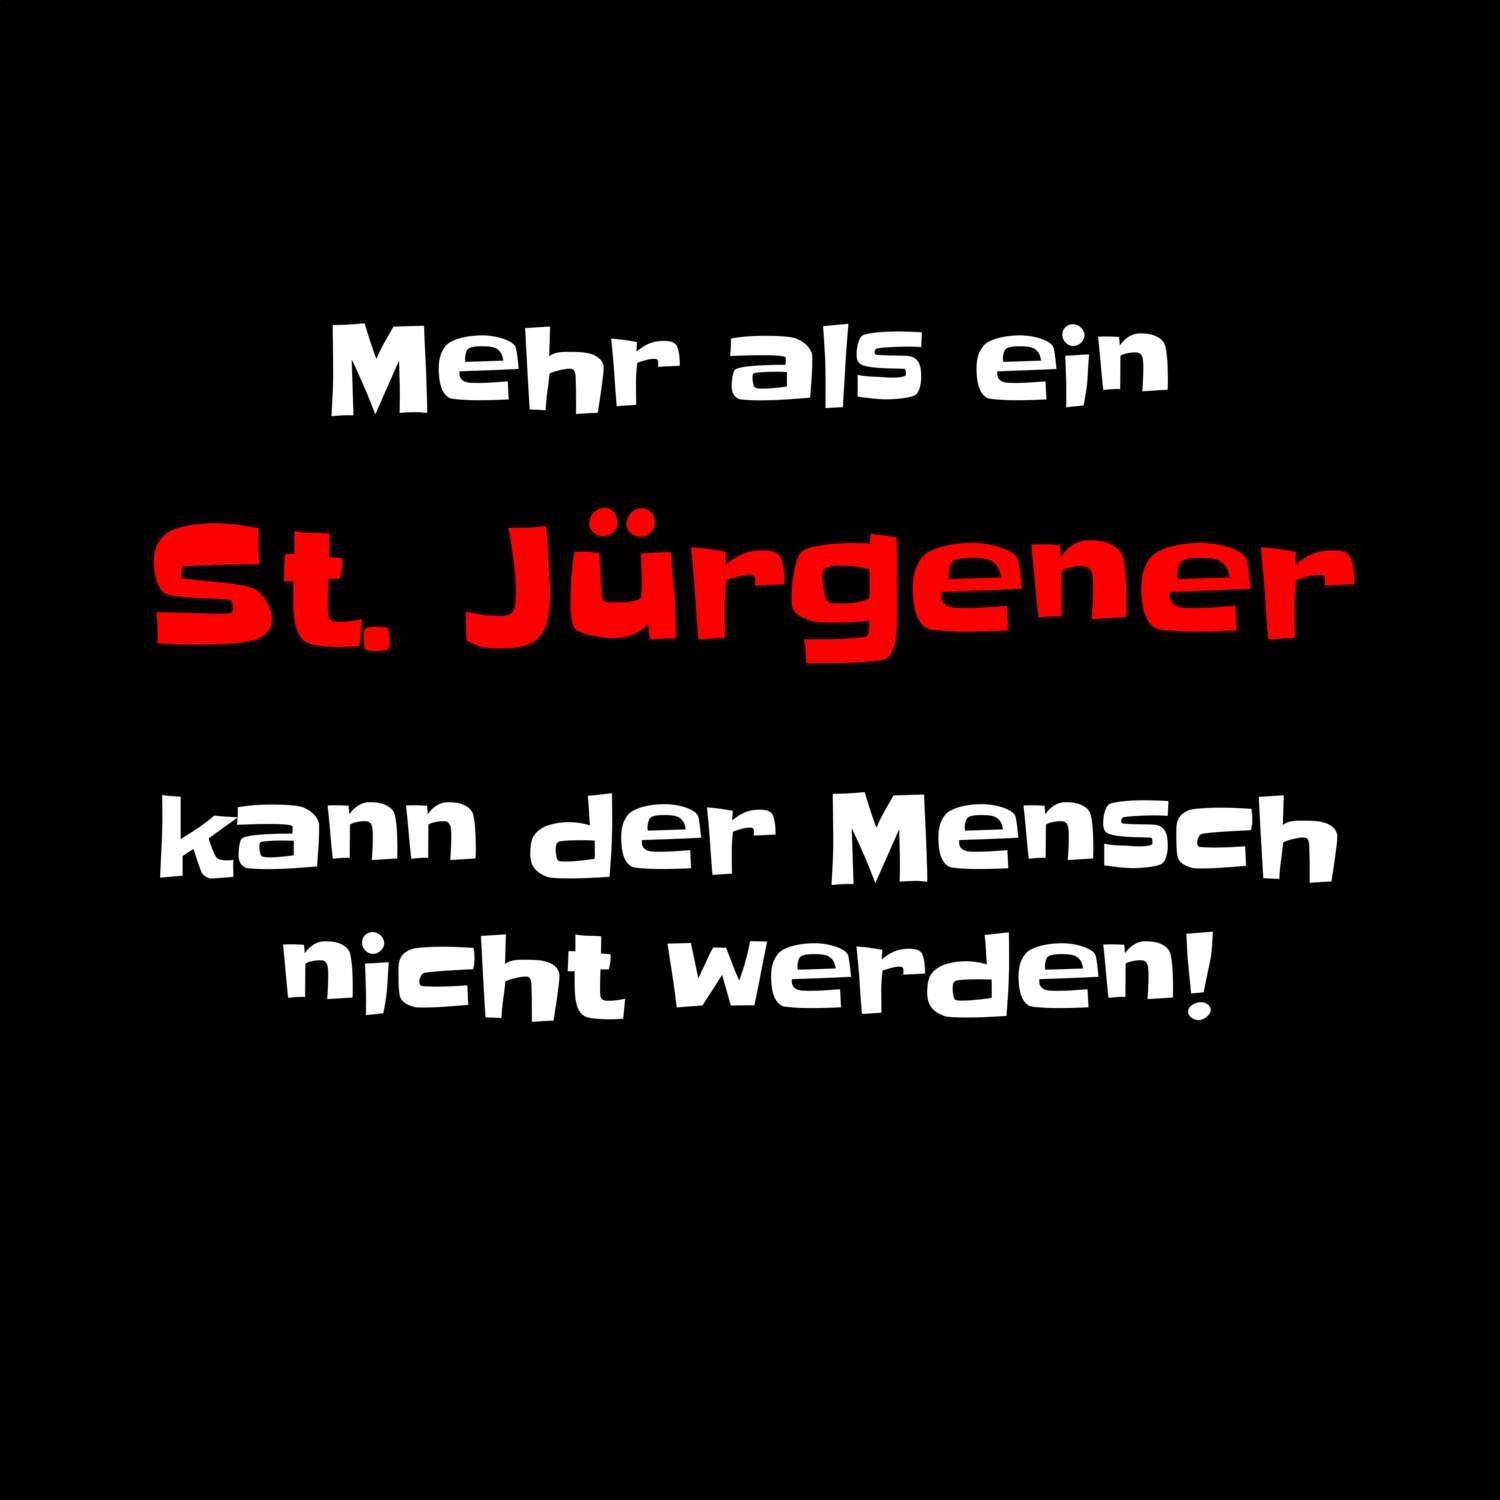 St. Jürgen T-Shirt »Mehr als ein«